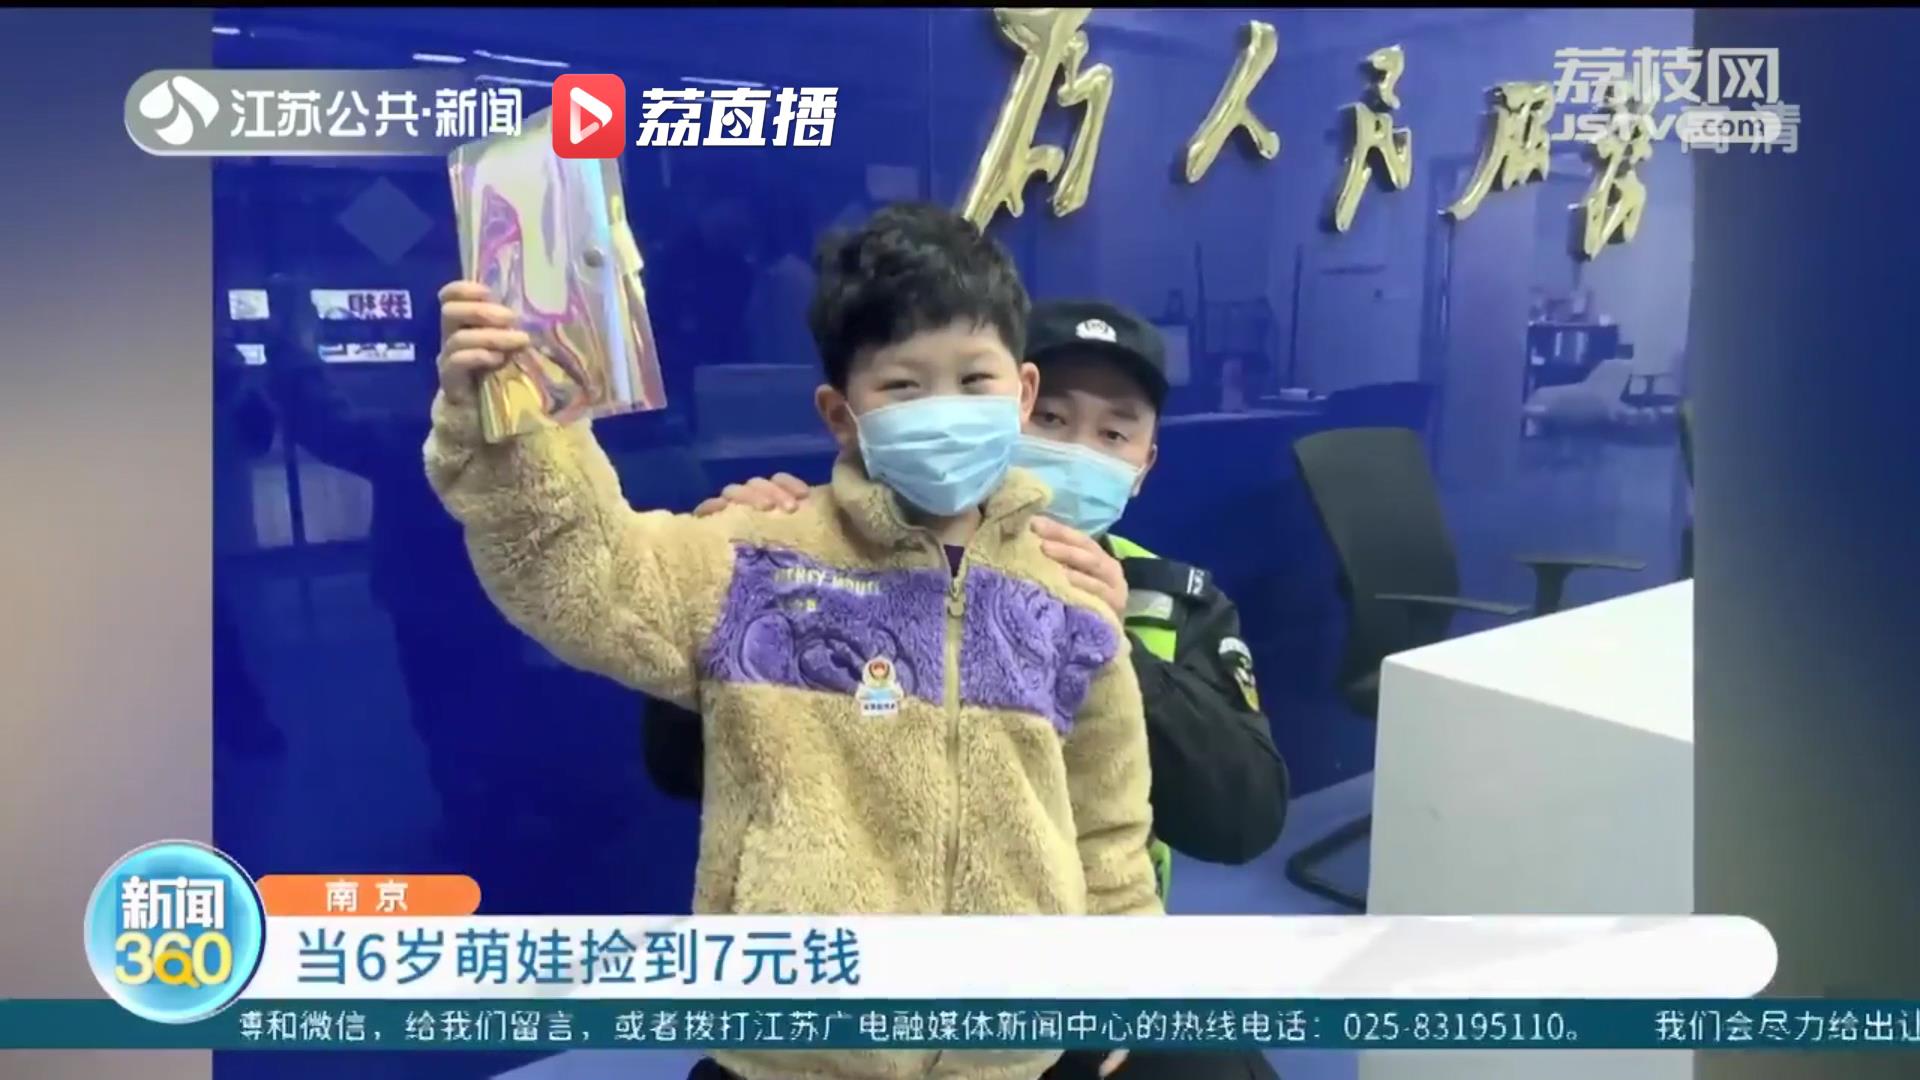 6岁孩子南京地铁站内捡到七元钱 随后上演现实版的《一分钱》